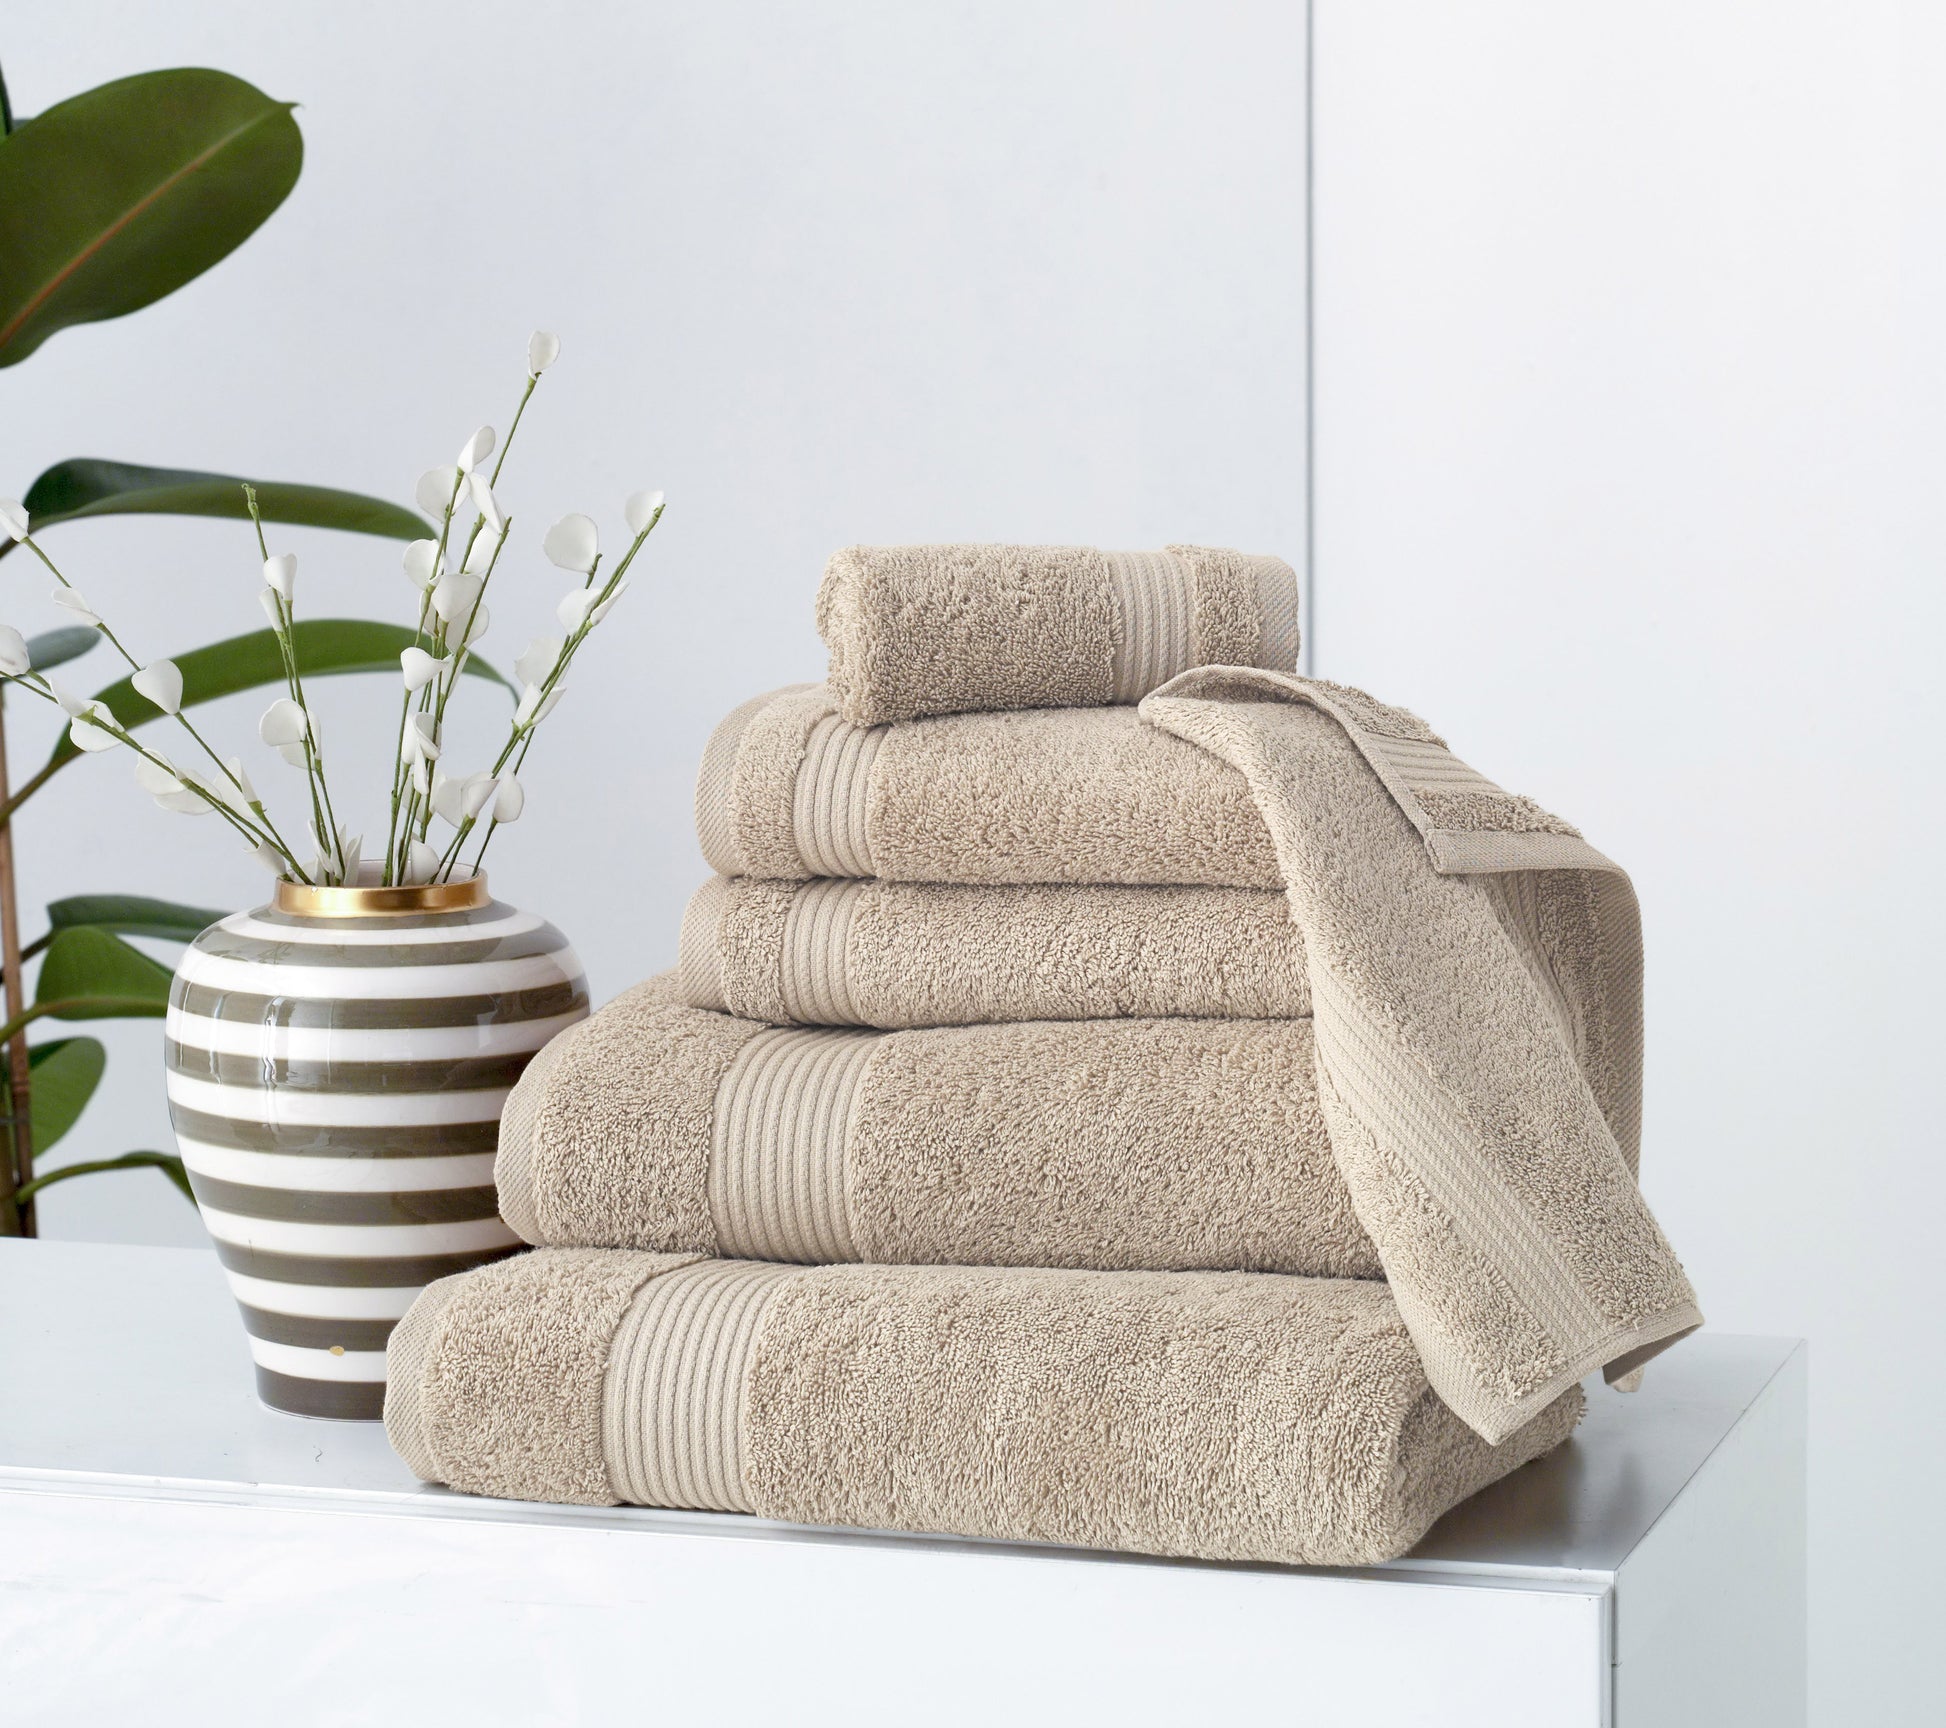 LUXURY 07 Pieces Towels Set, 100% Natural Cotton, Premium Hotel